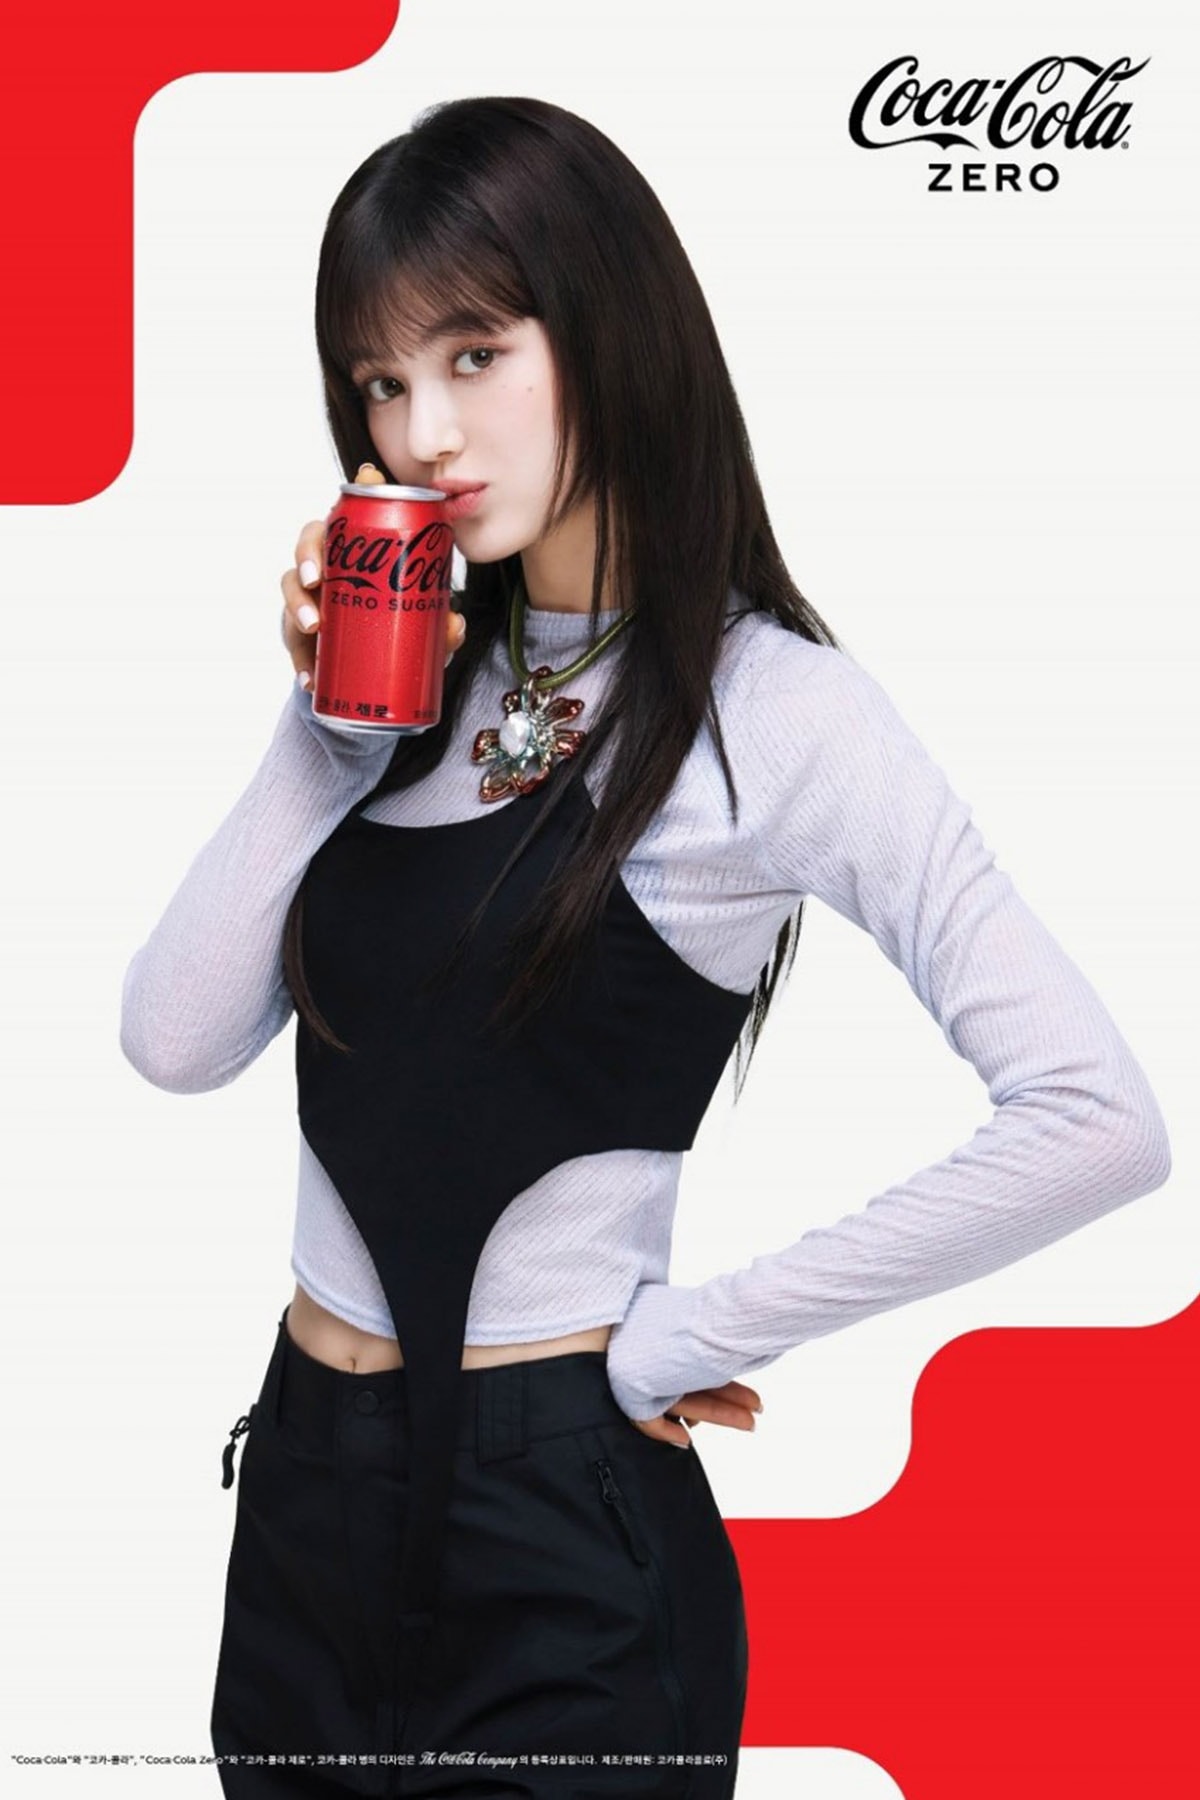 怪物級女團 NewJeans 正式出任 Coca-Cola 可口可樂全球大使